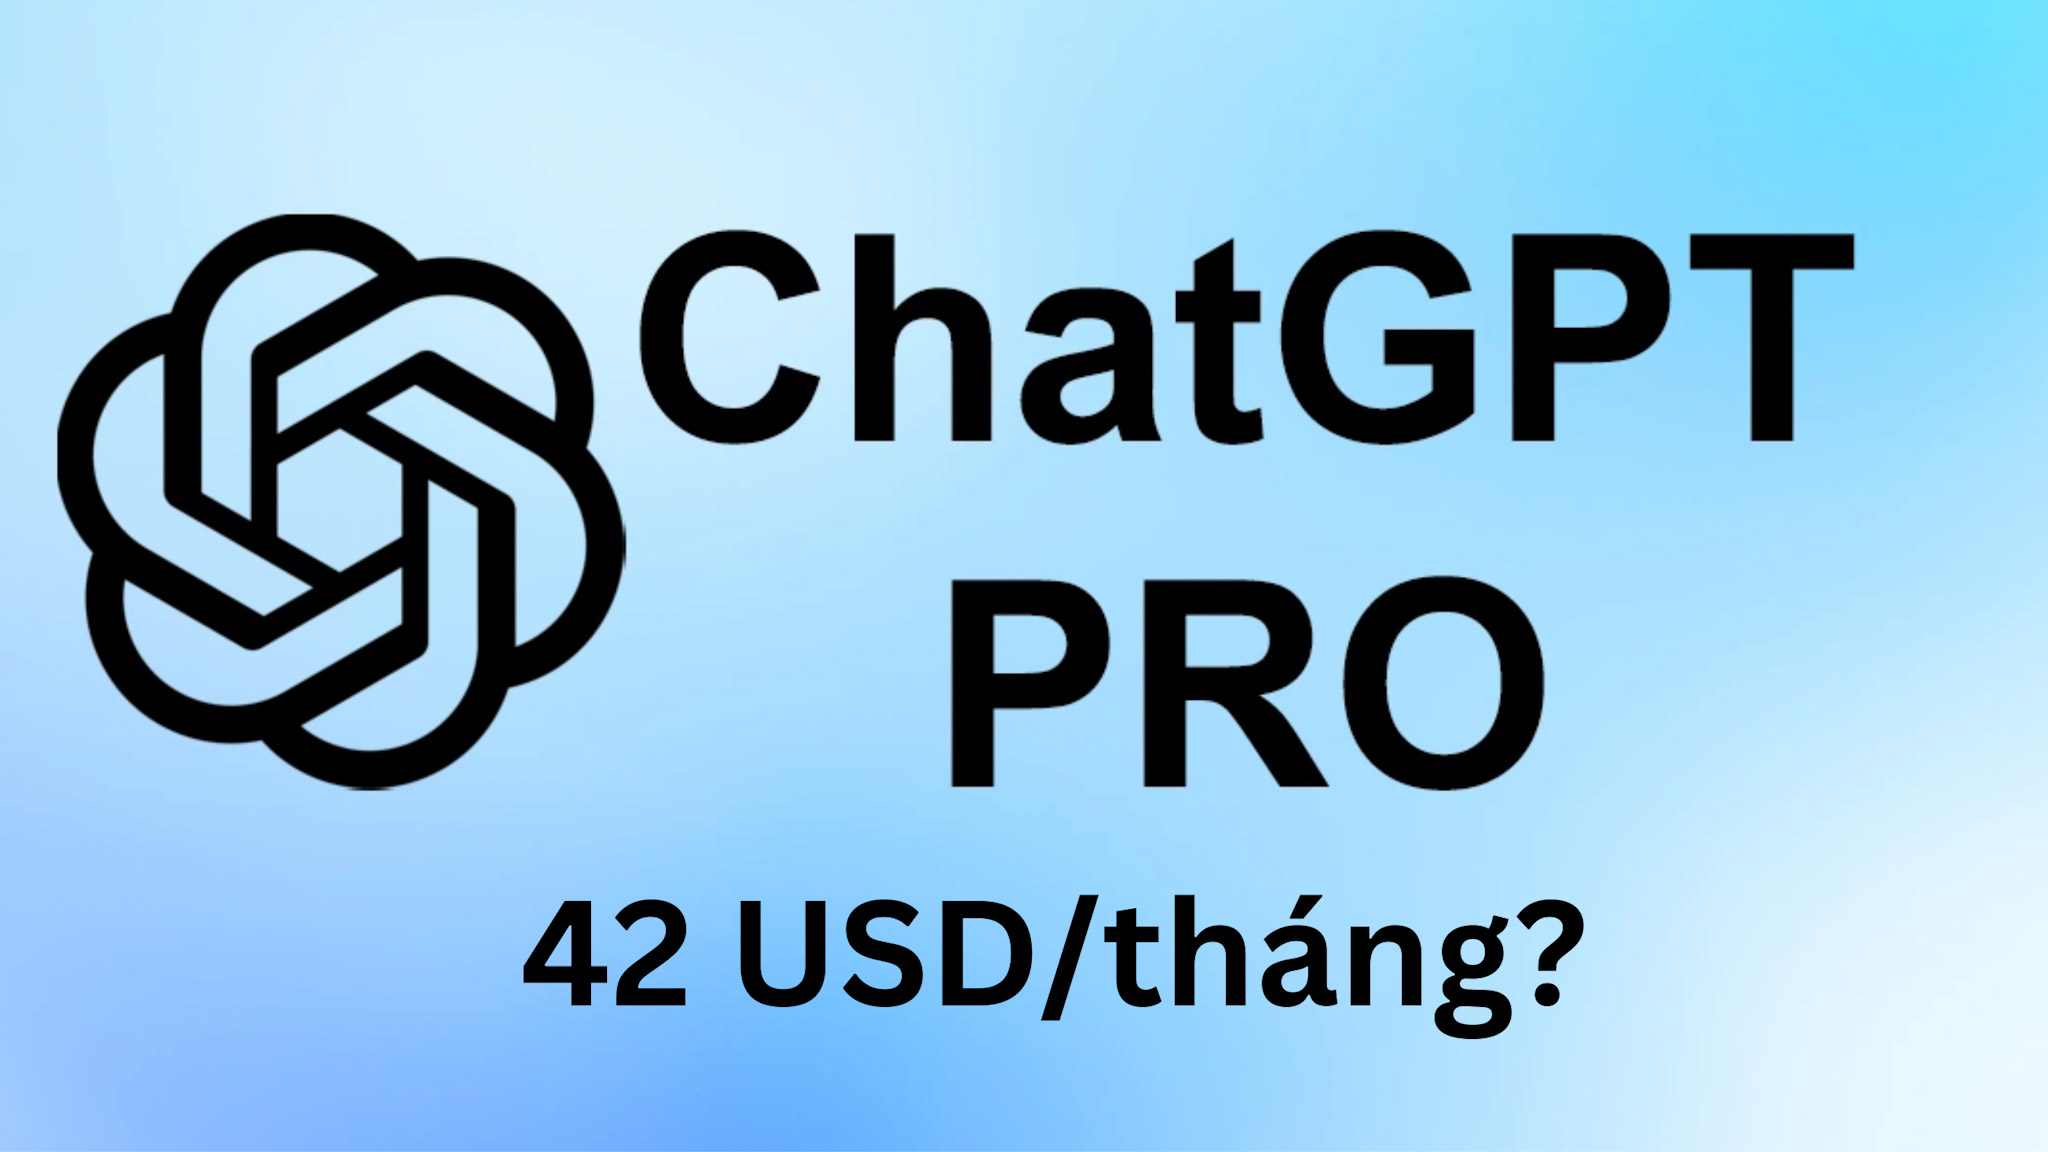 ChatGPT sắp có gói Pro giá 42 USD/tháng với hiệu suất nhanh hơn hiện tại?